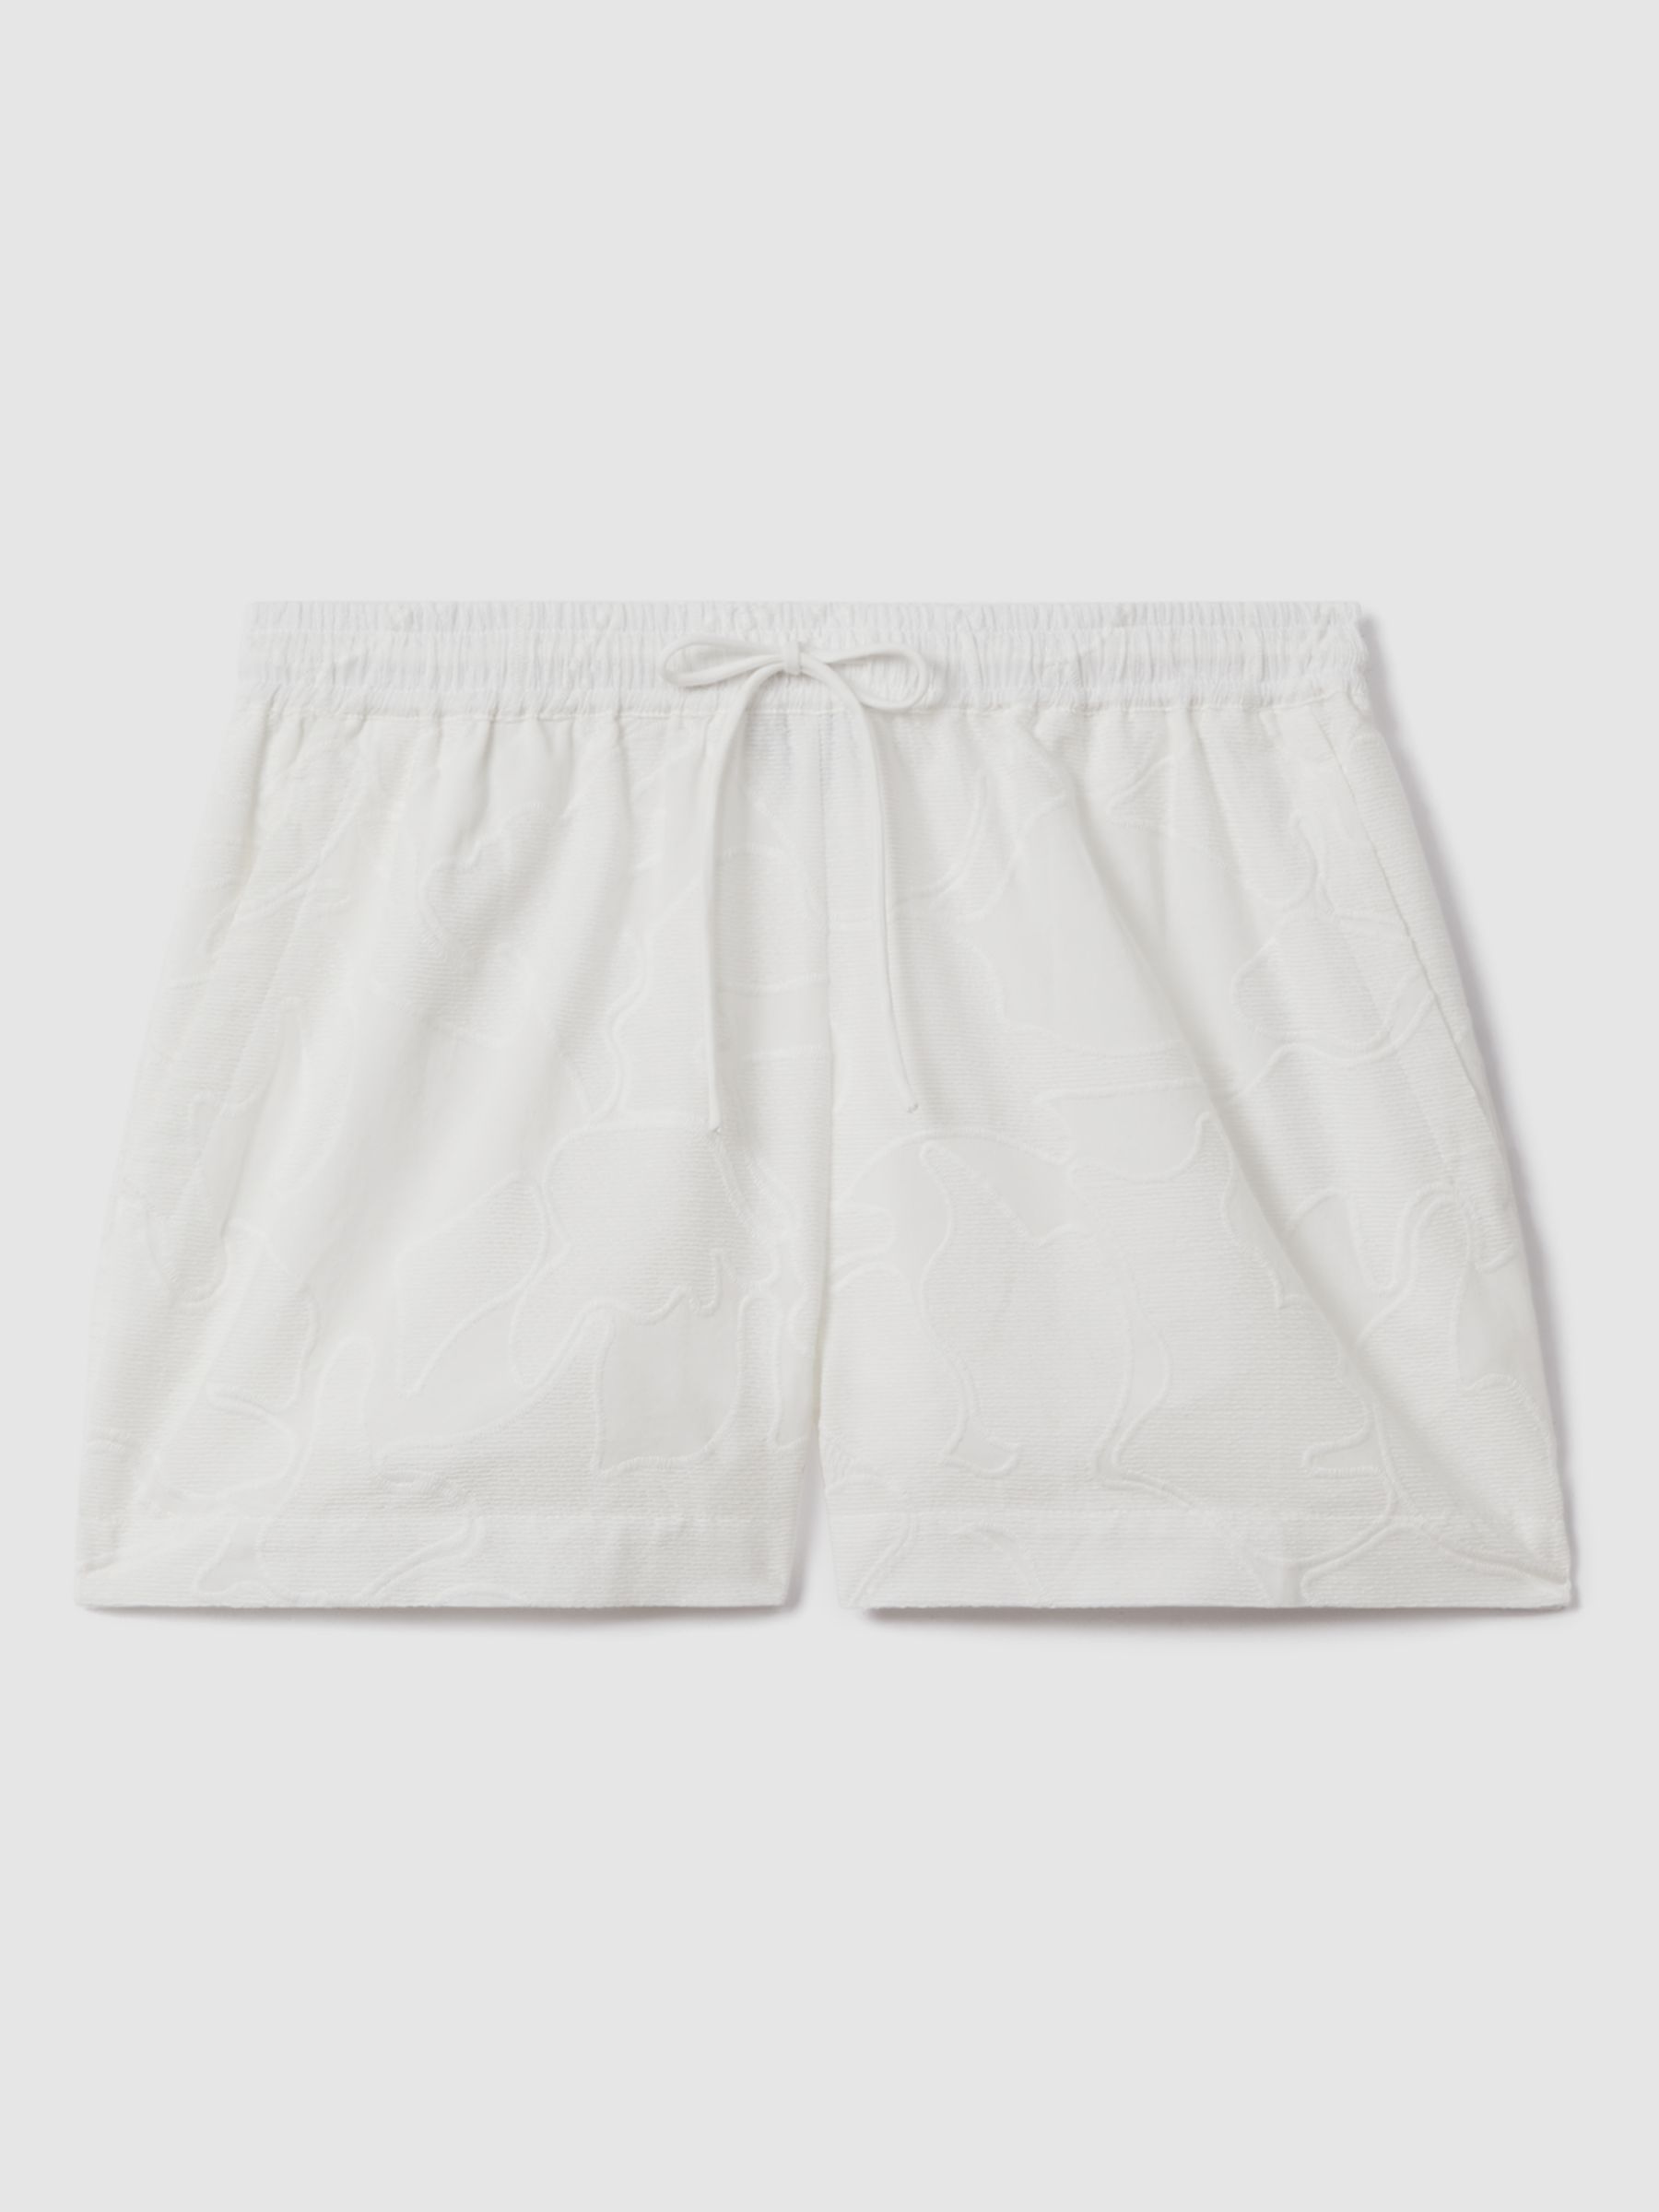 Reiss Nia Embroidered Cotton Drawstring Waist Shorts, White, 6